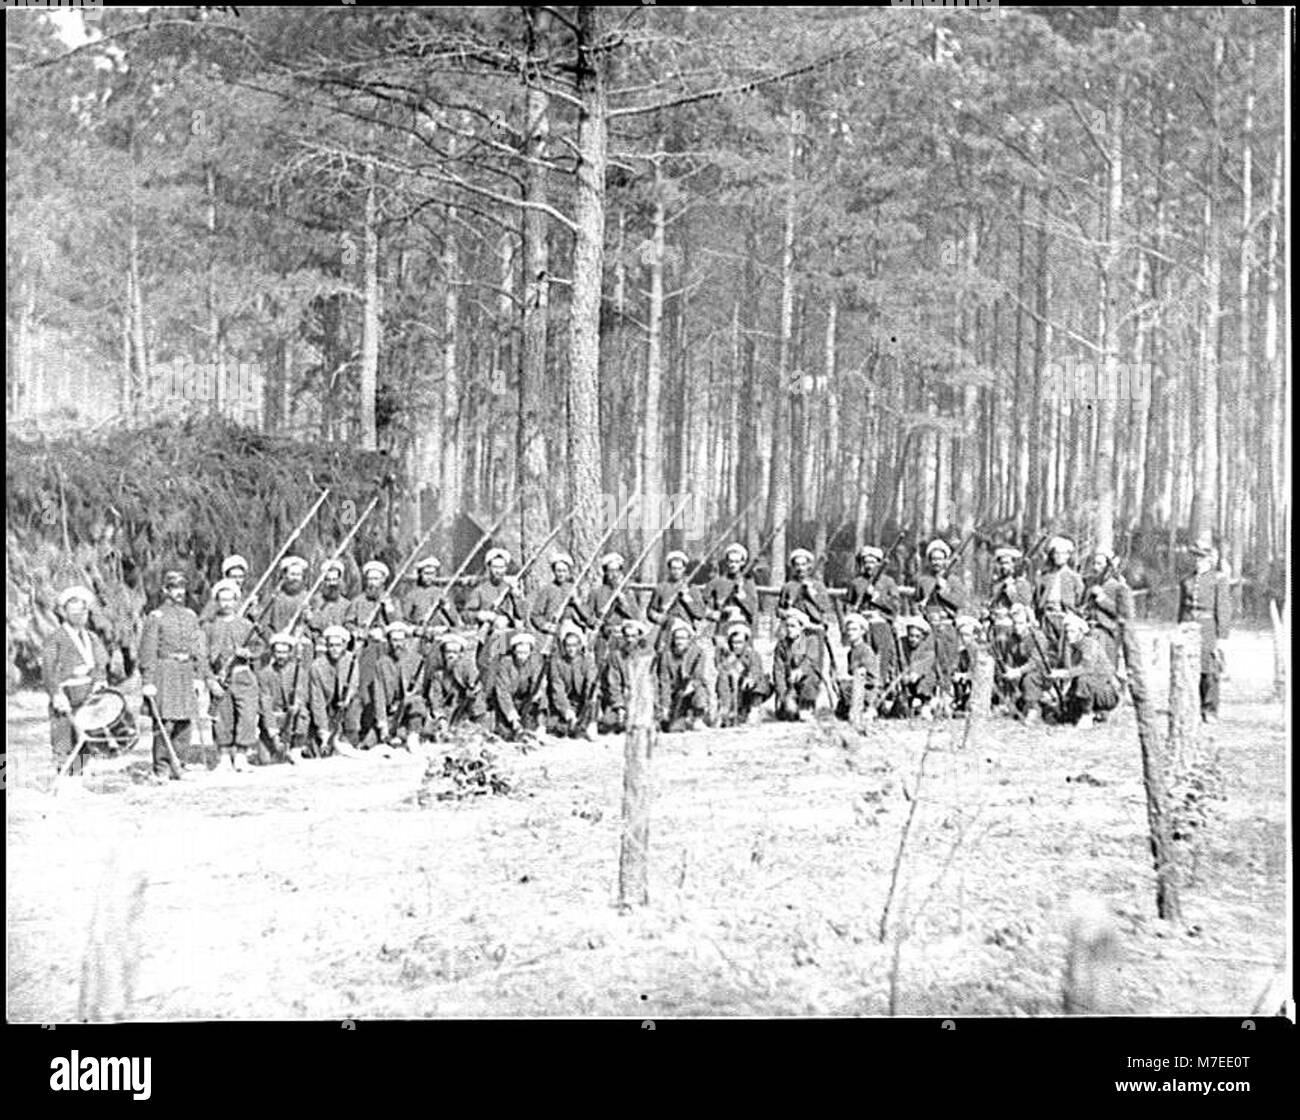 Petersburg, Va. Company F, 114th Pennsylvania Infantry (Zouaves) with fixed bayonets LOC cwpb.03880 Stock Photo